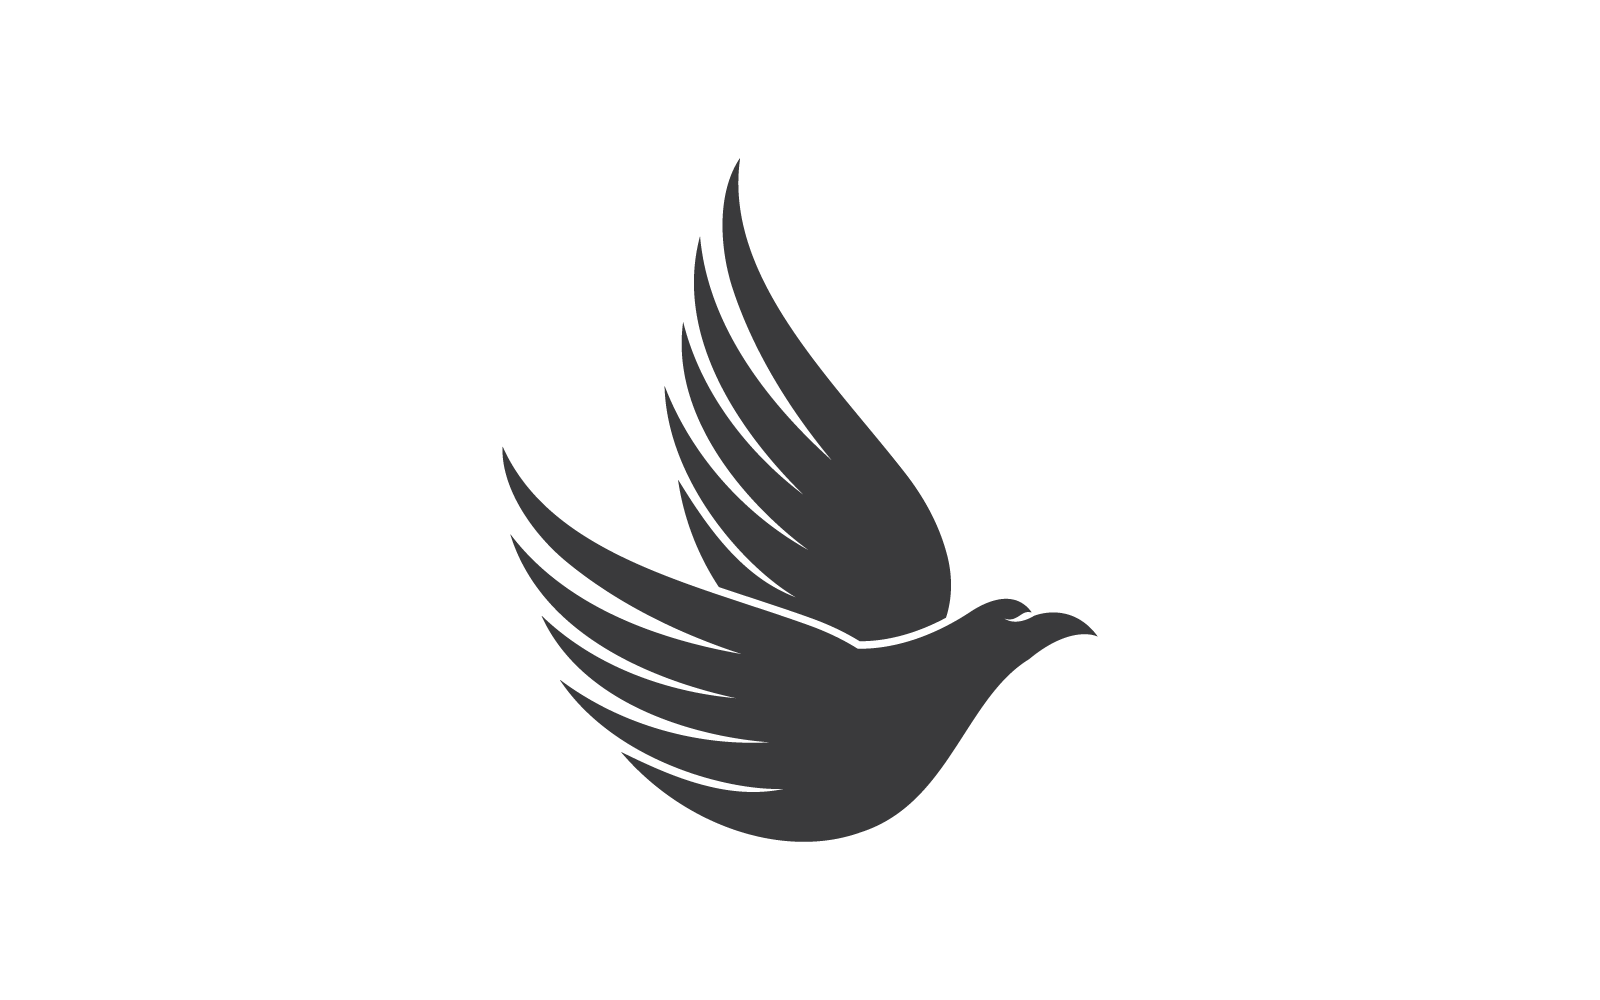 Falcon eagle bird illustration logo vector flat design